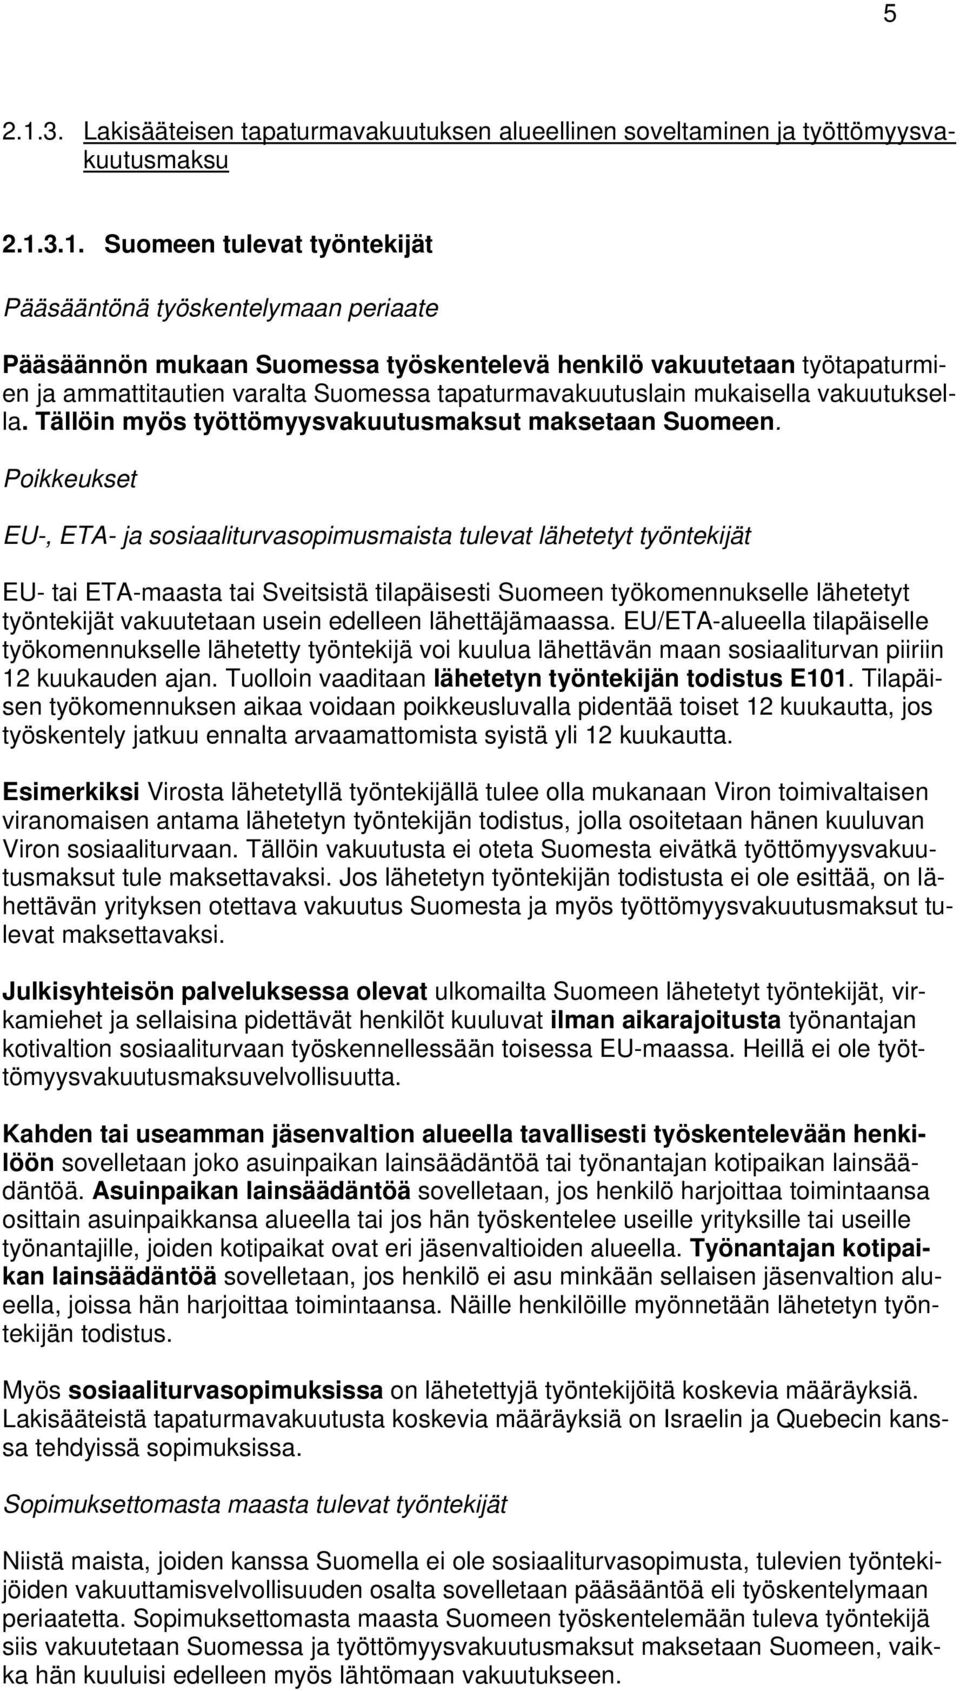 3.1. Suomeen tulevat työntekijät Pääsääntönä työskentelymaan periaate Pääsäännön mukaan Suomessa työskentelevä henkilö vakuutetaan työtapaturmien ja ammattitautien varalta Suomessa